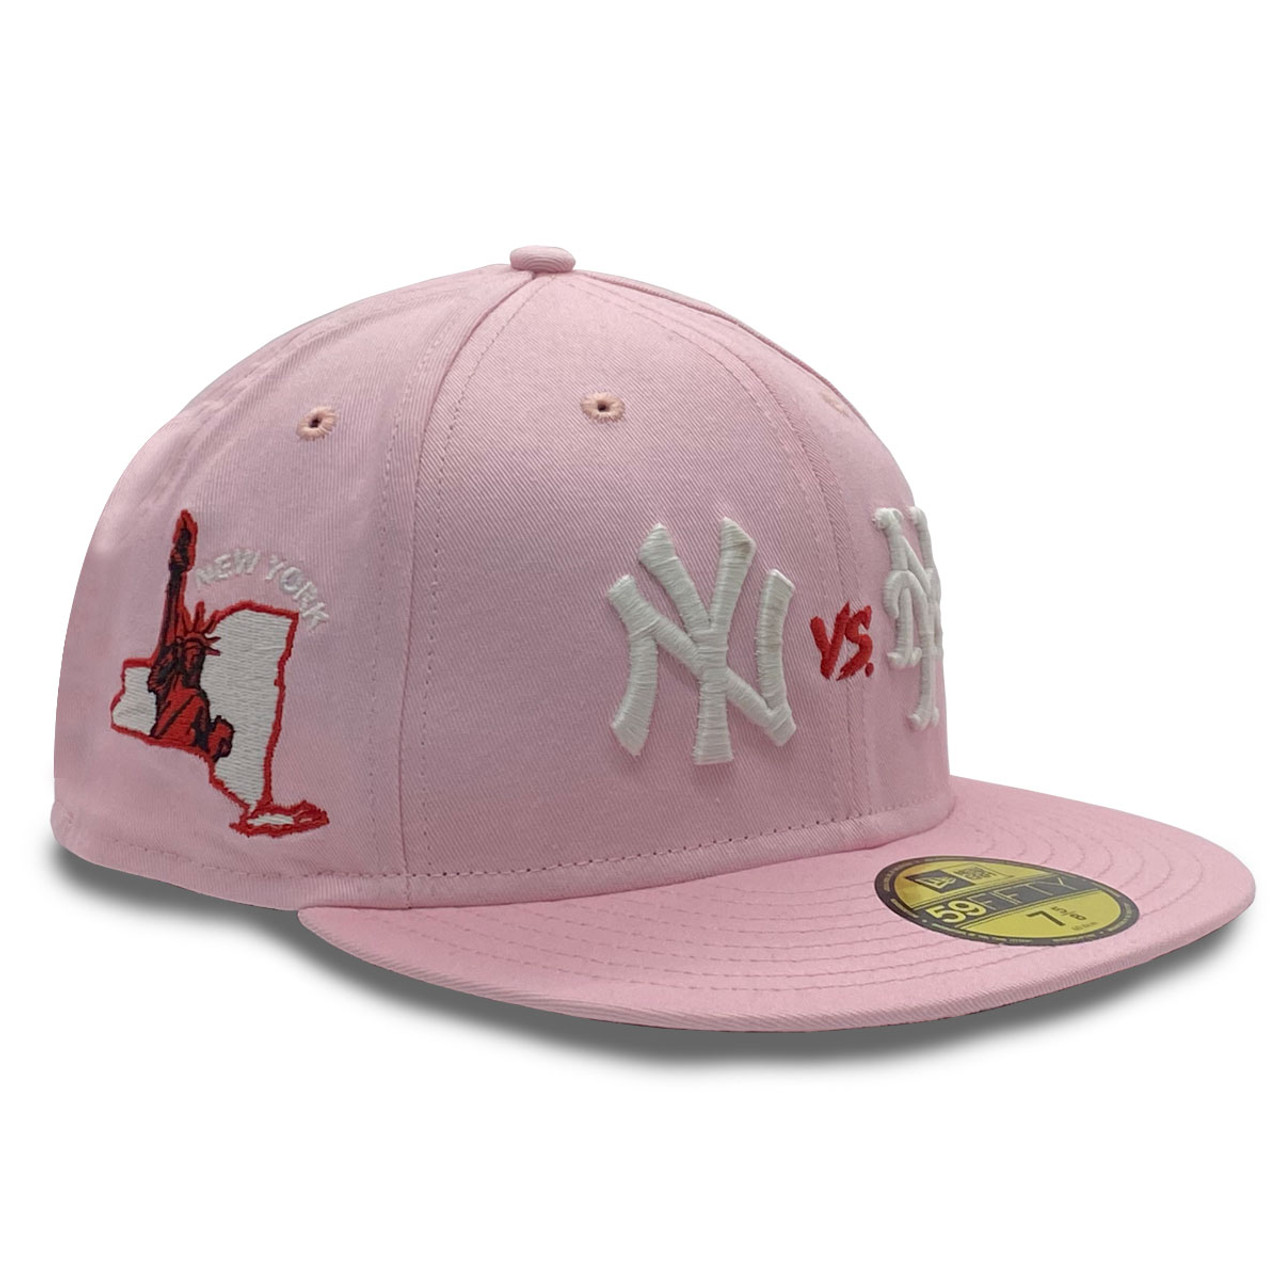 New Era Men 5950 New York Yankees Hat (Pink Glow), Pink Glow / 7 7/8